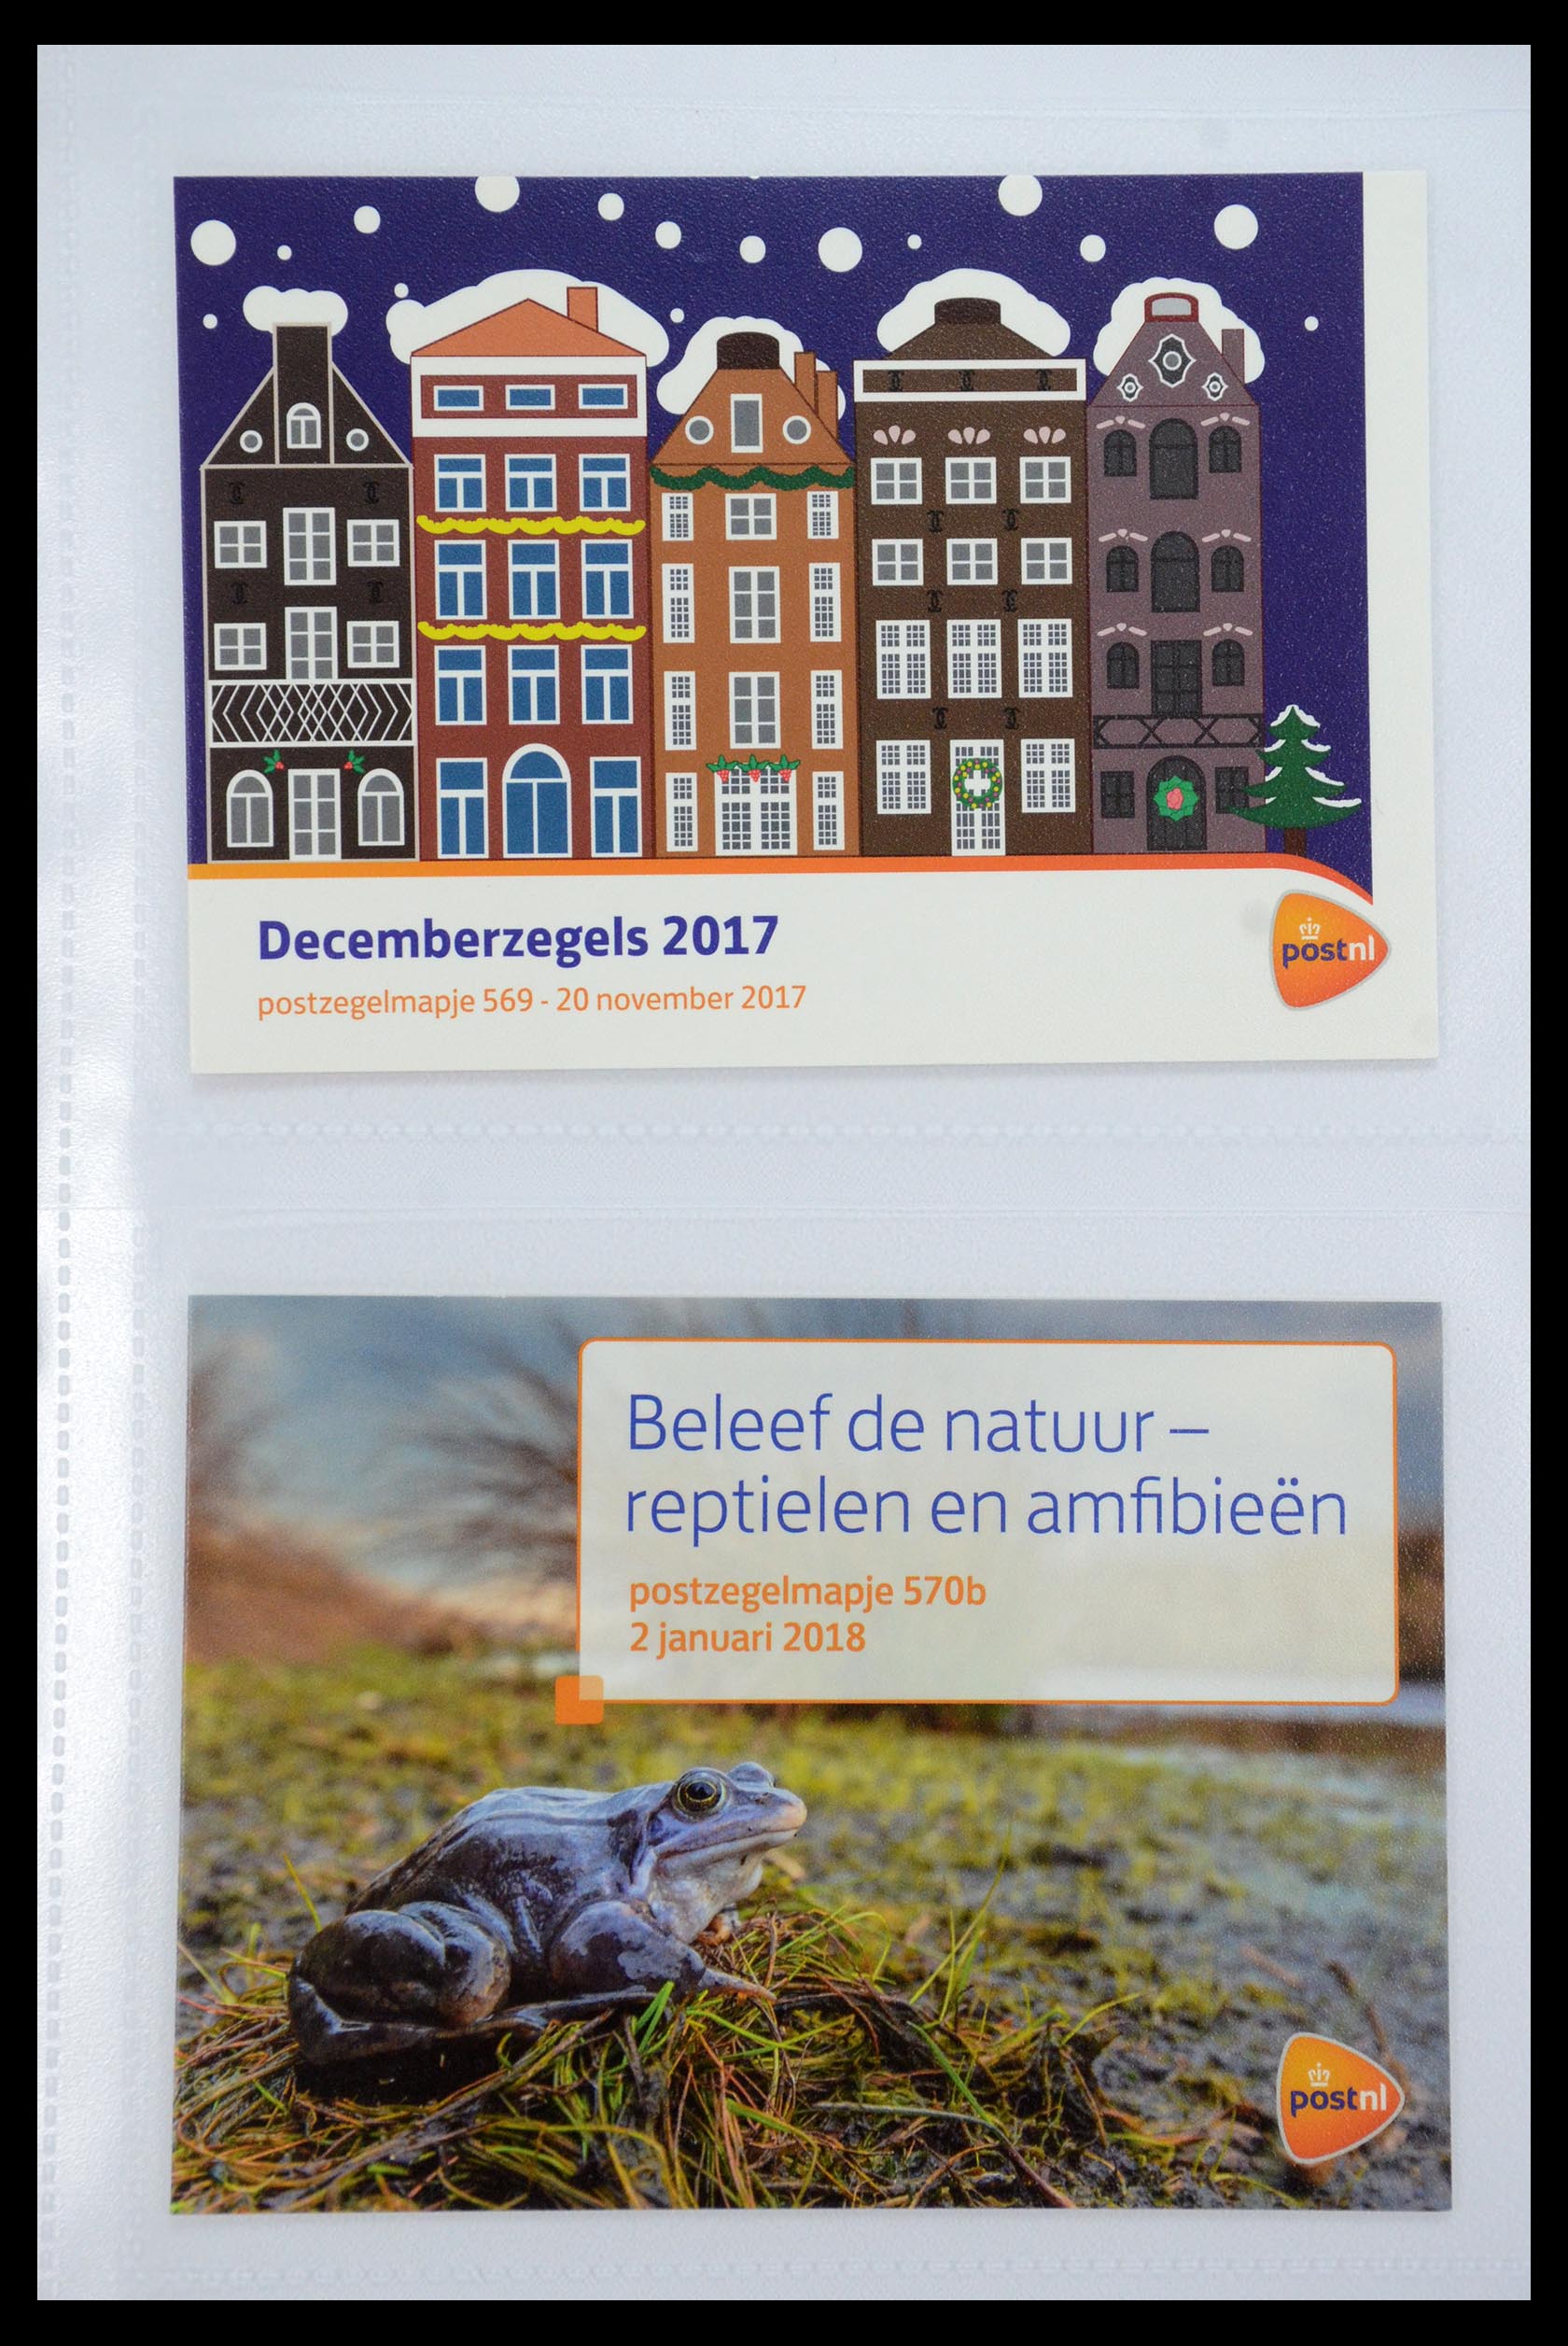 35947 342 - Stamp Collection 35947 Netherlands PTT presentation packs 1982-2019!